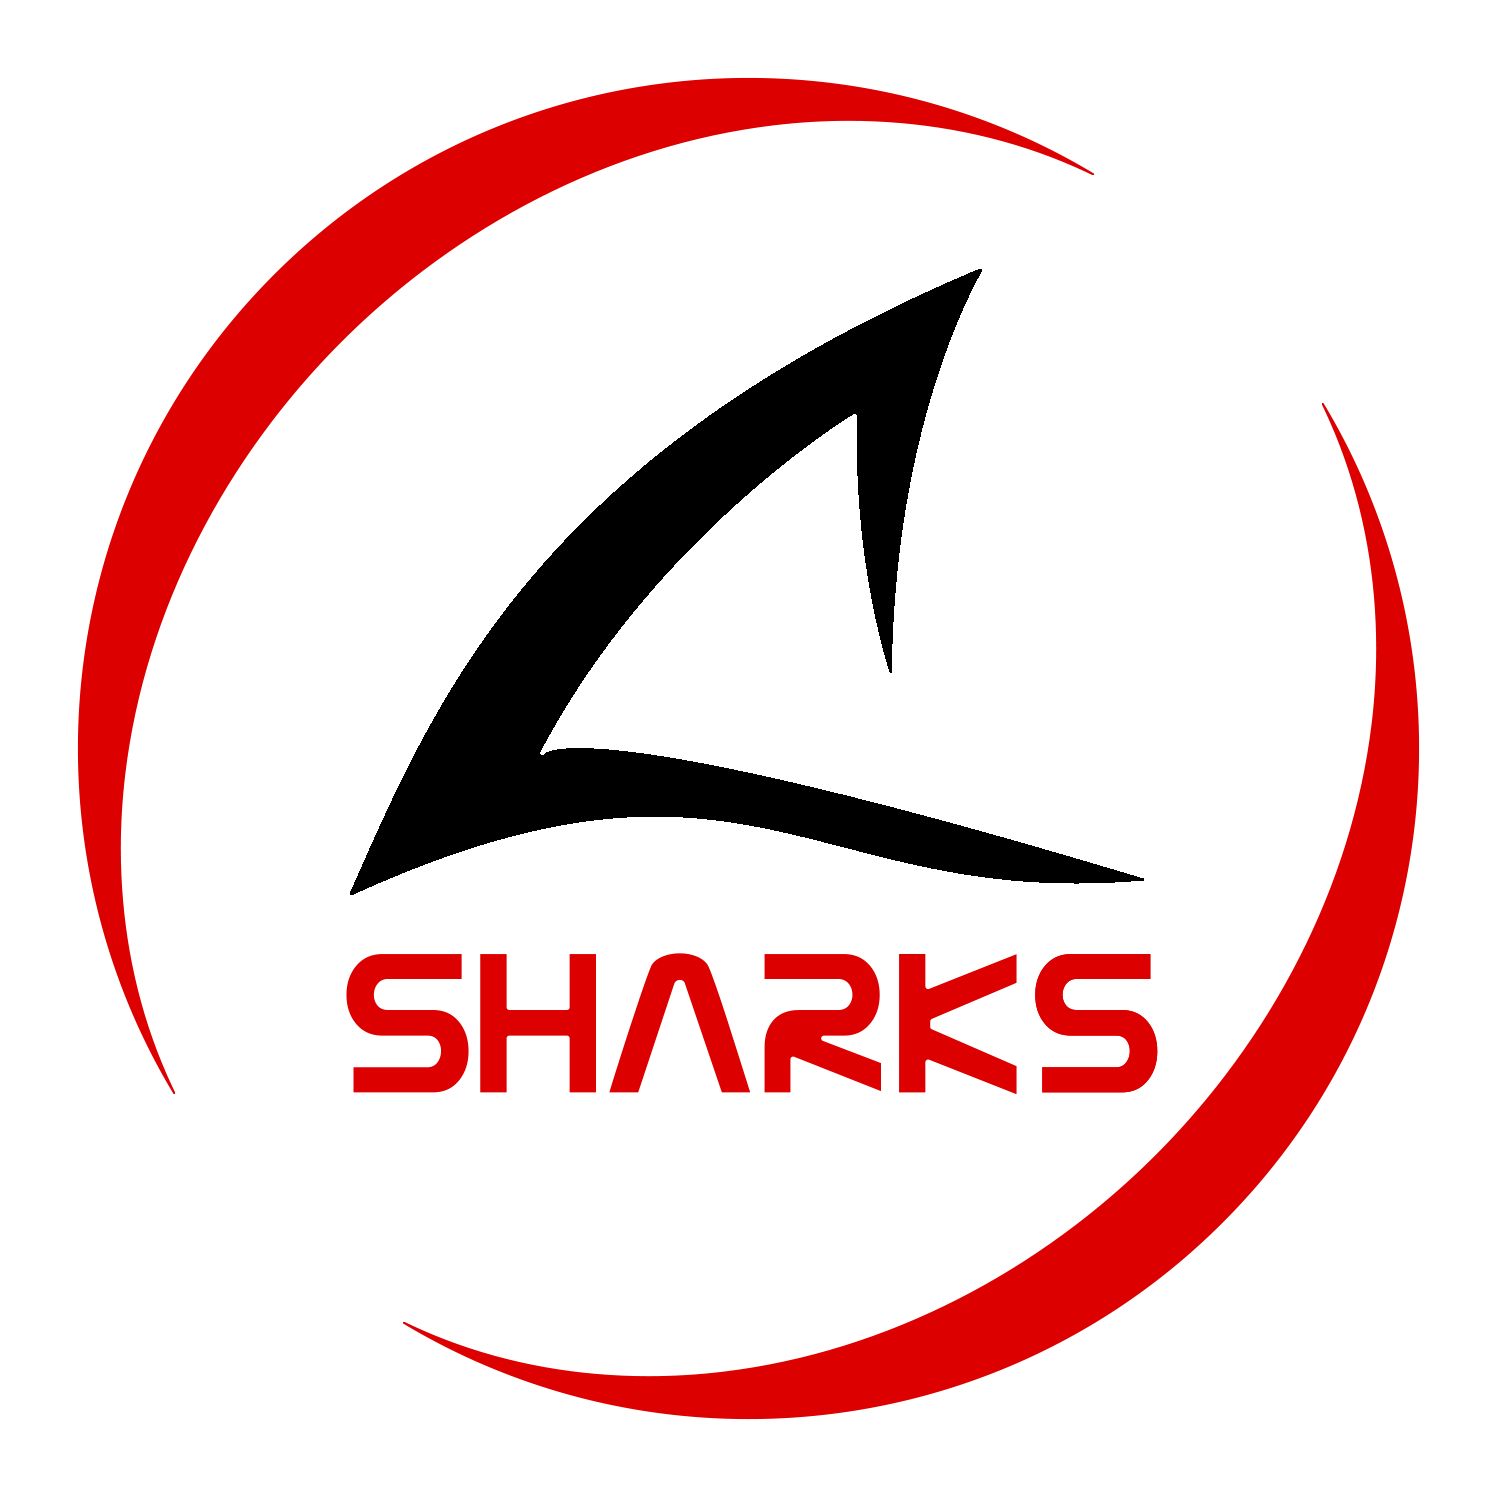 Sharks Monza